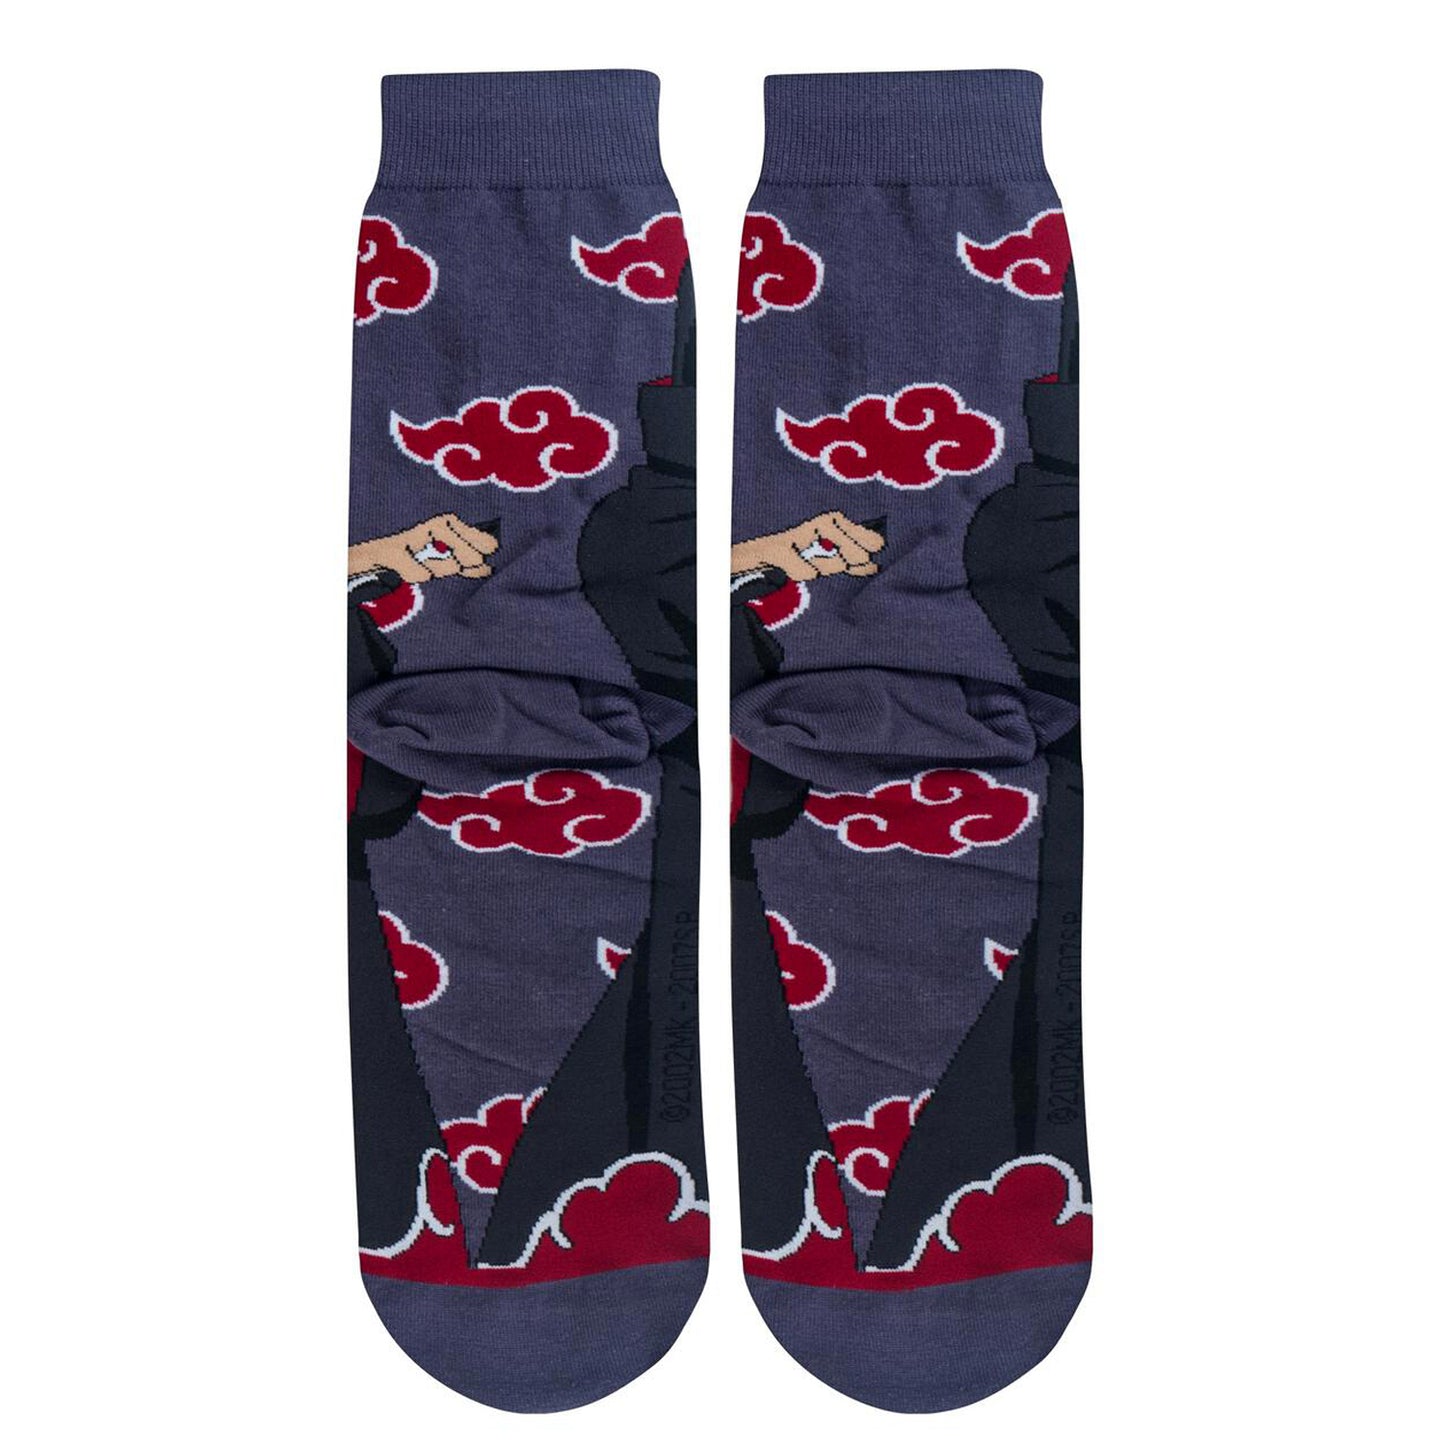 Odd Sox Men's Crew Socks - Itachi (Naruto Shippuden)